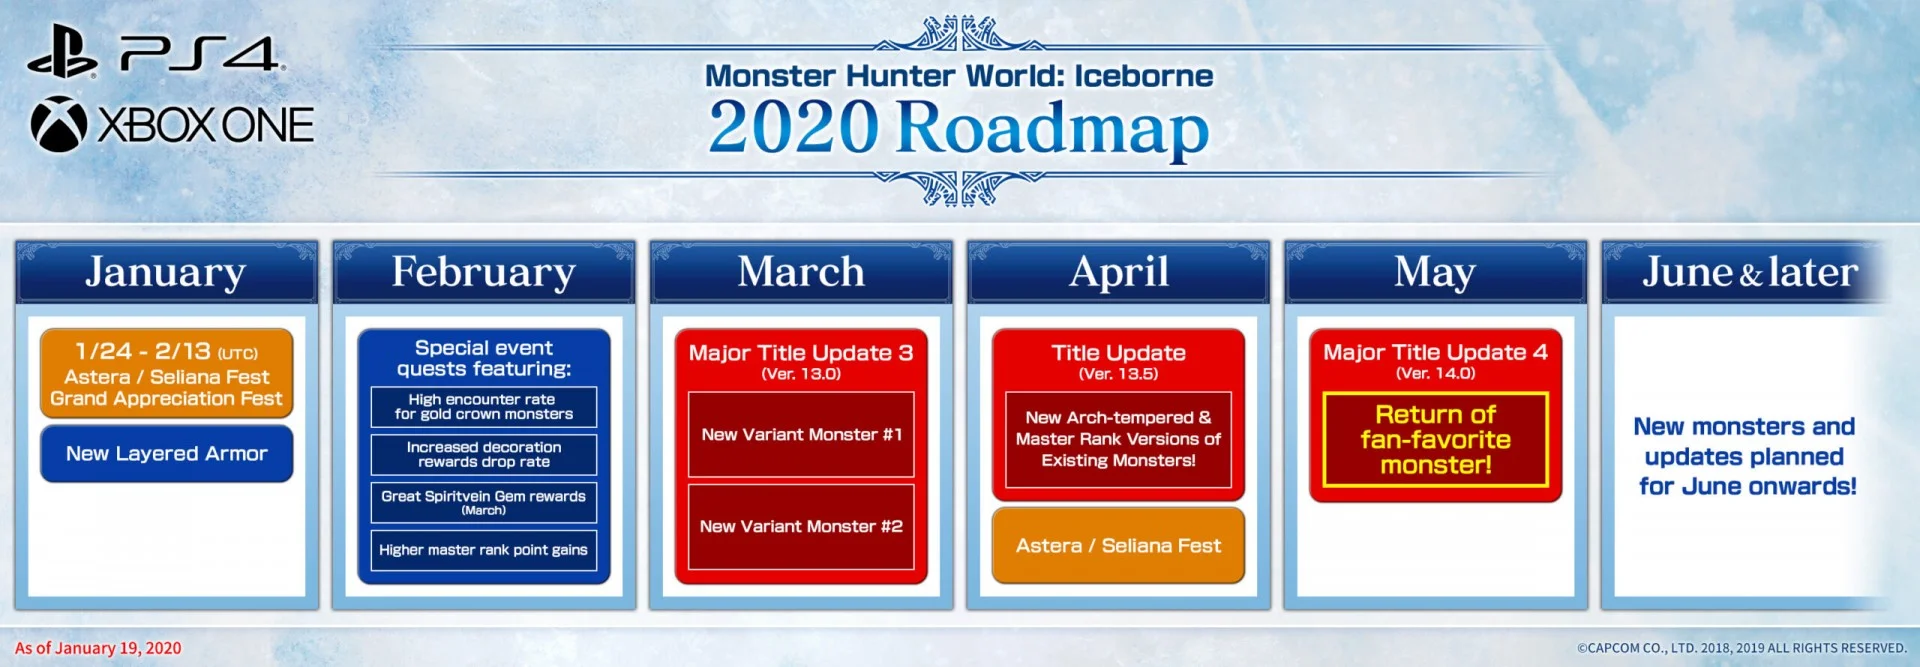 В апреле обновления Monster Hunter: World на РС и консолях станут выходить одновременно - фото 1